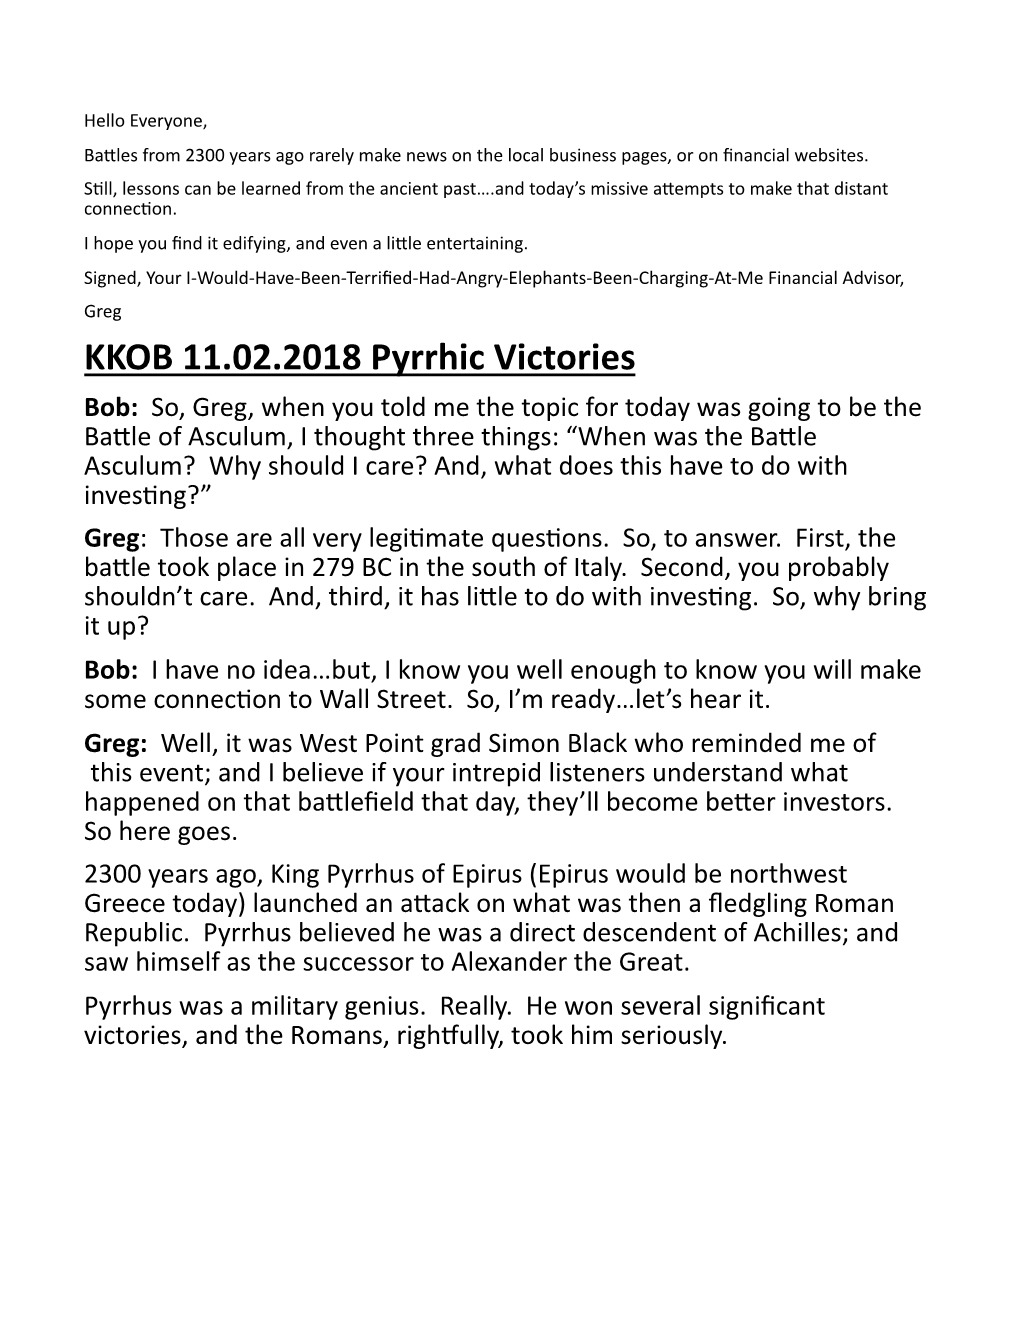 KKOB 11.02.2018 Pyrrhic Victories